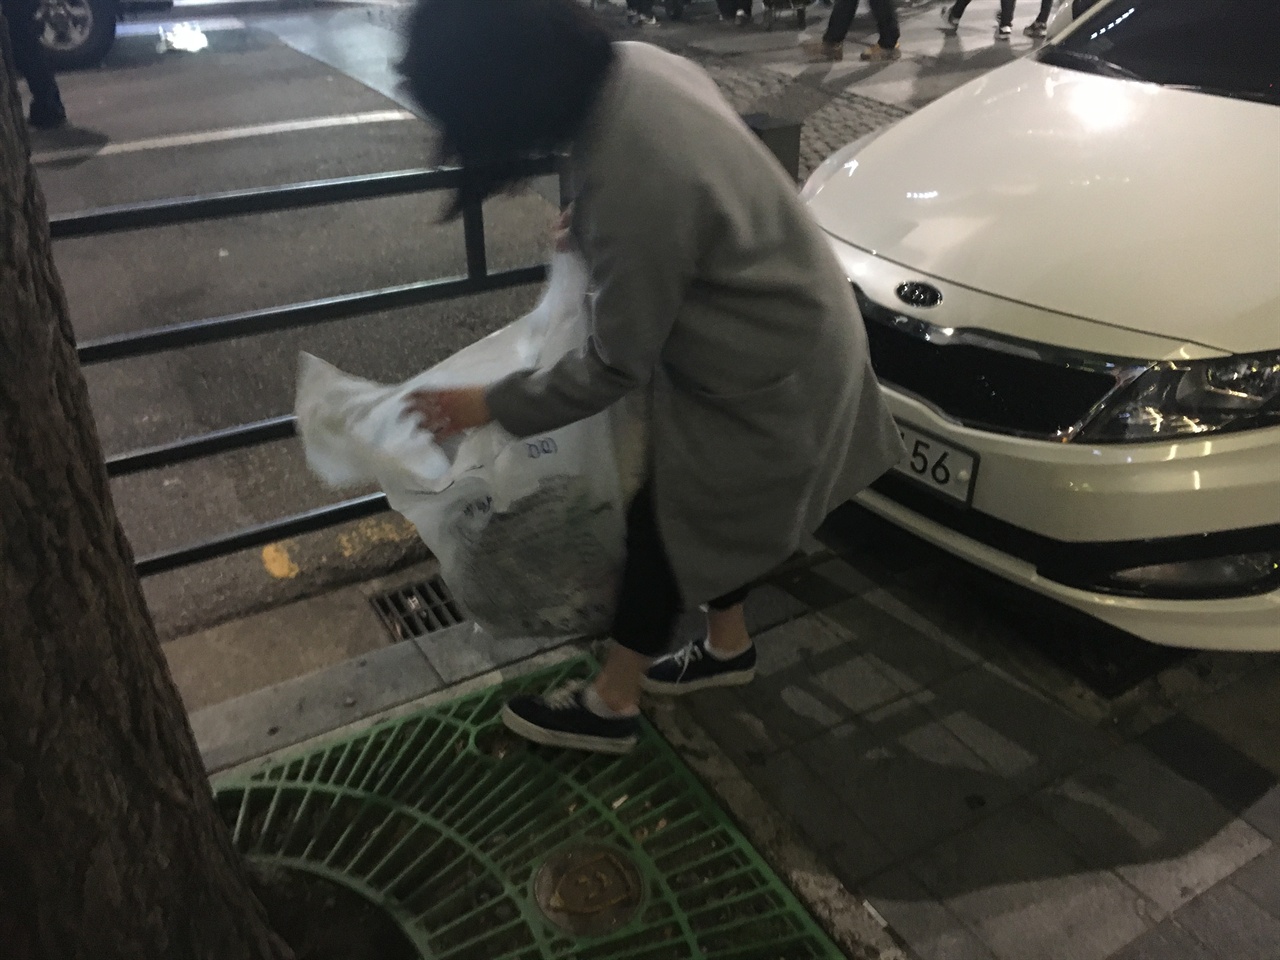 시위 행령이 지나간 자리에 나온 쓰레기들을 자진해서 쓰레기를 봉투를 들고 줍고 있다